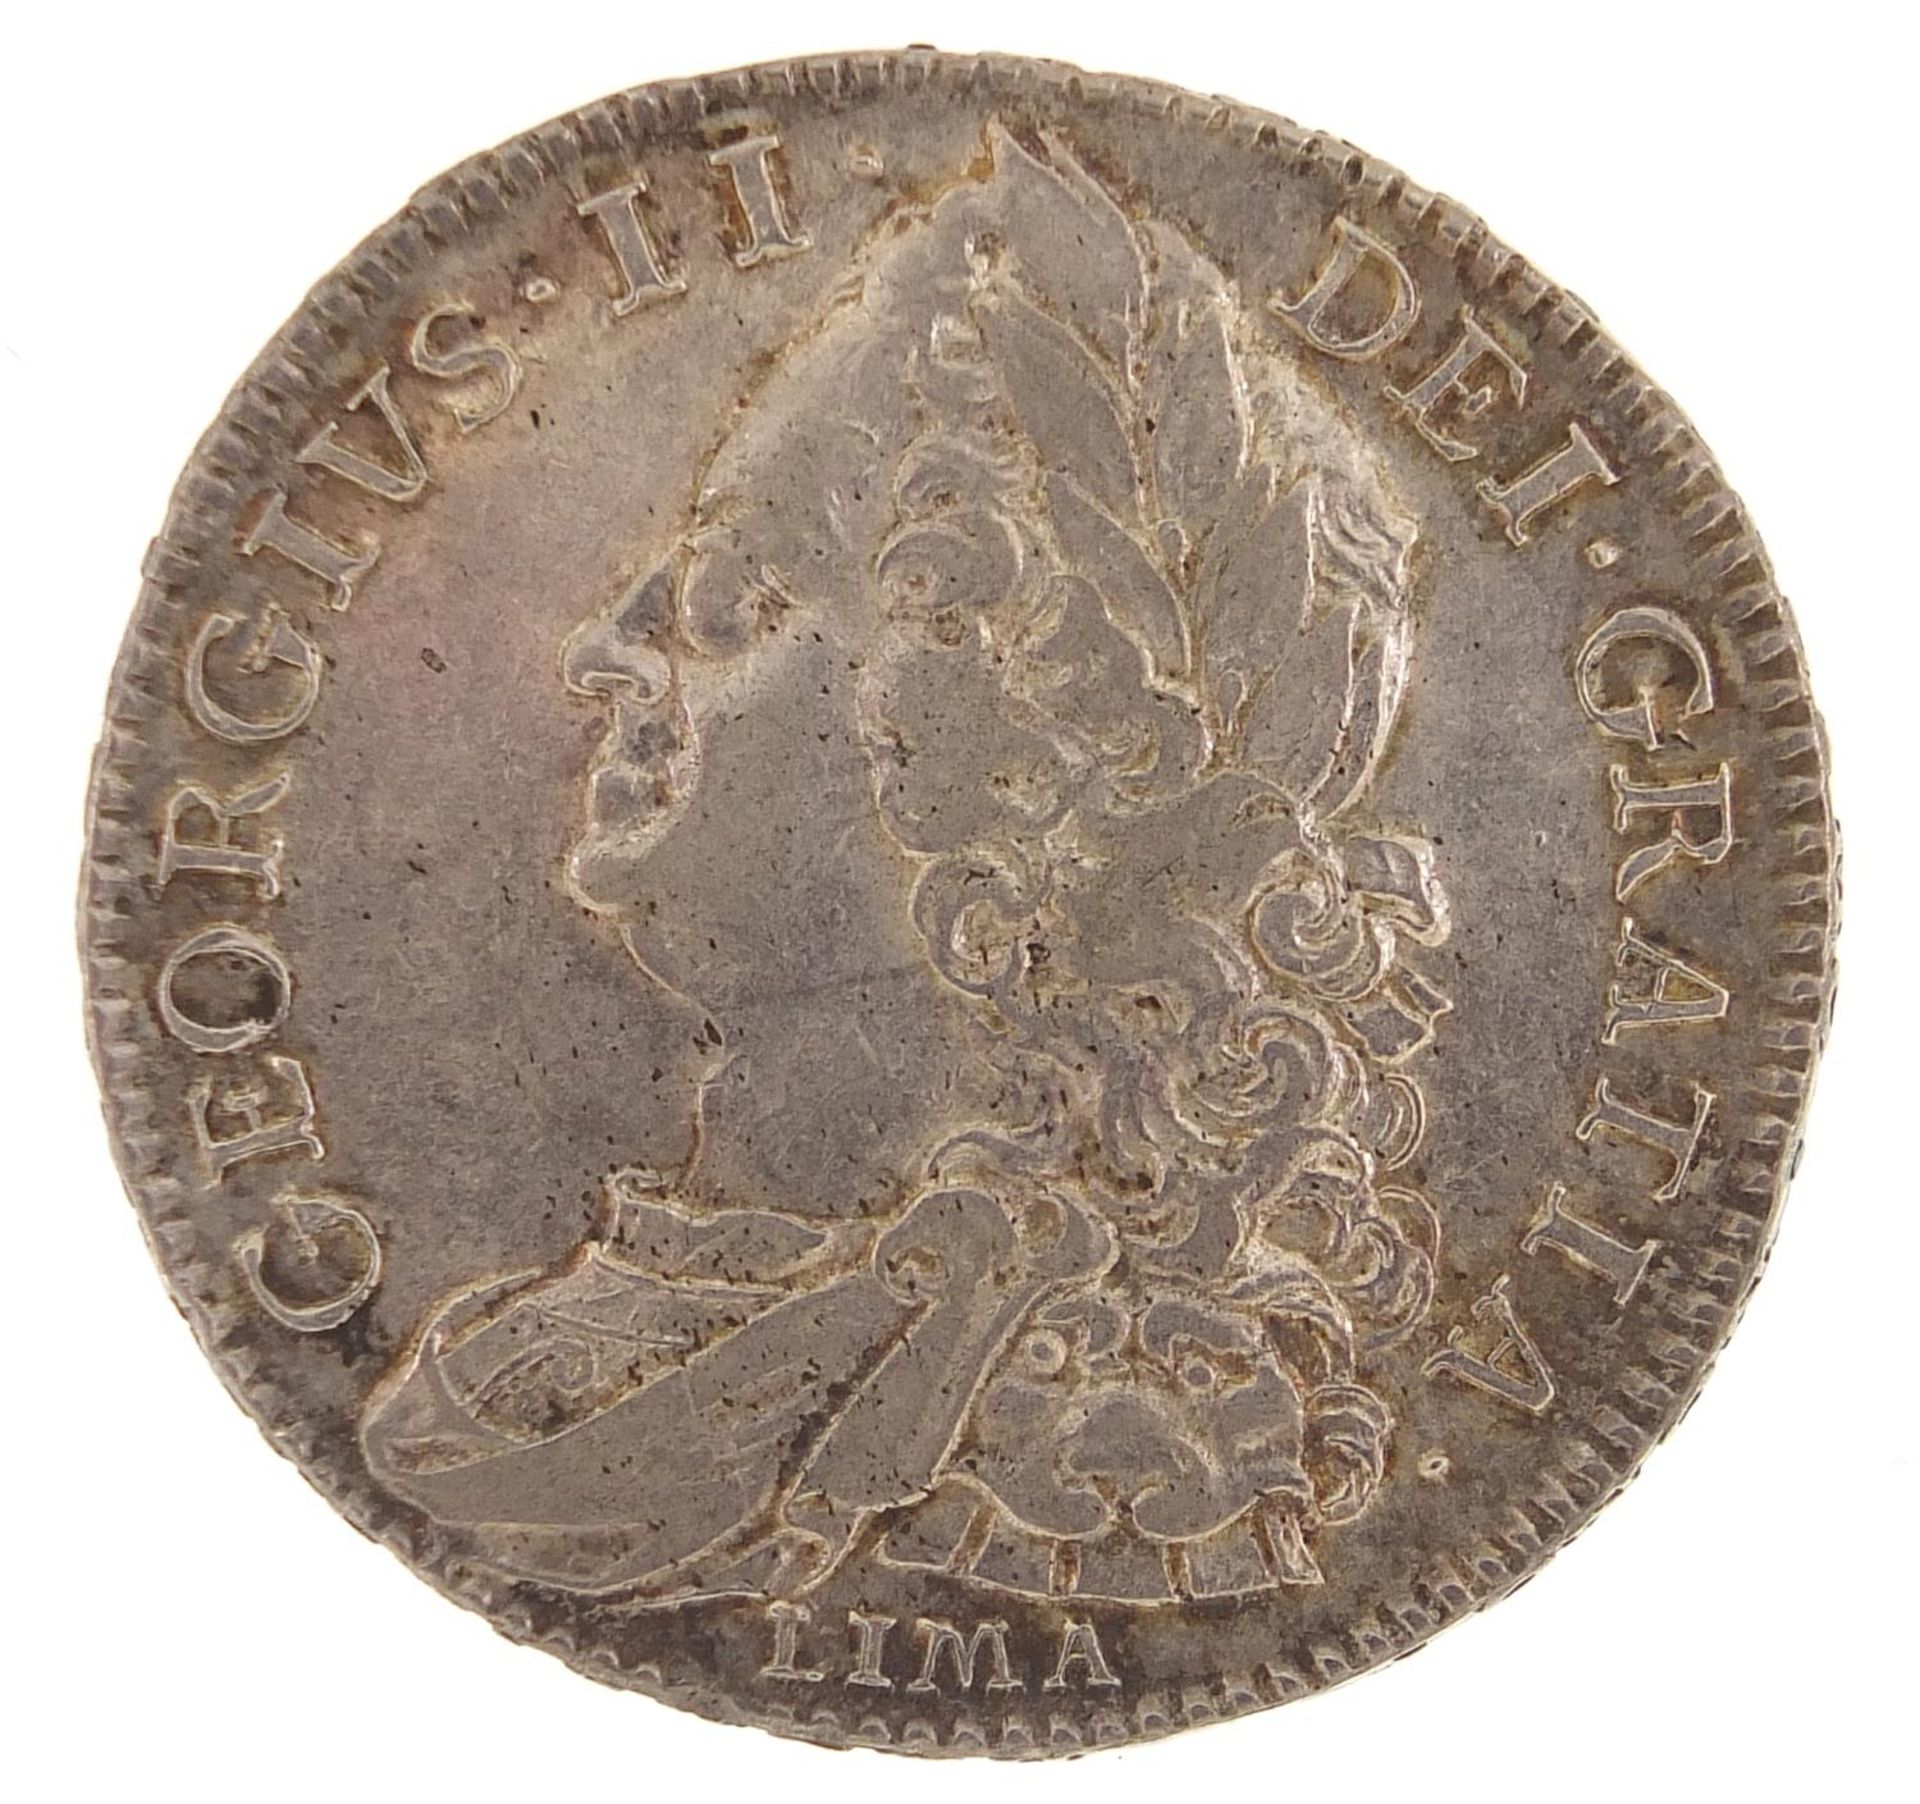 George II 1746 half crown - Image 2 of 2